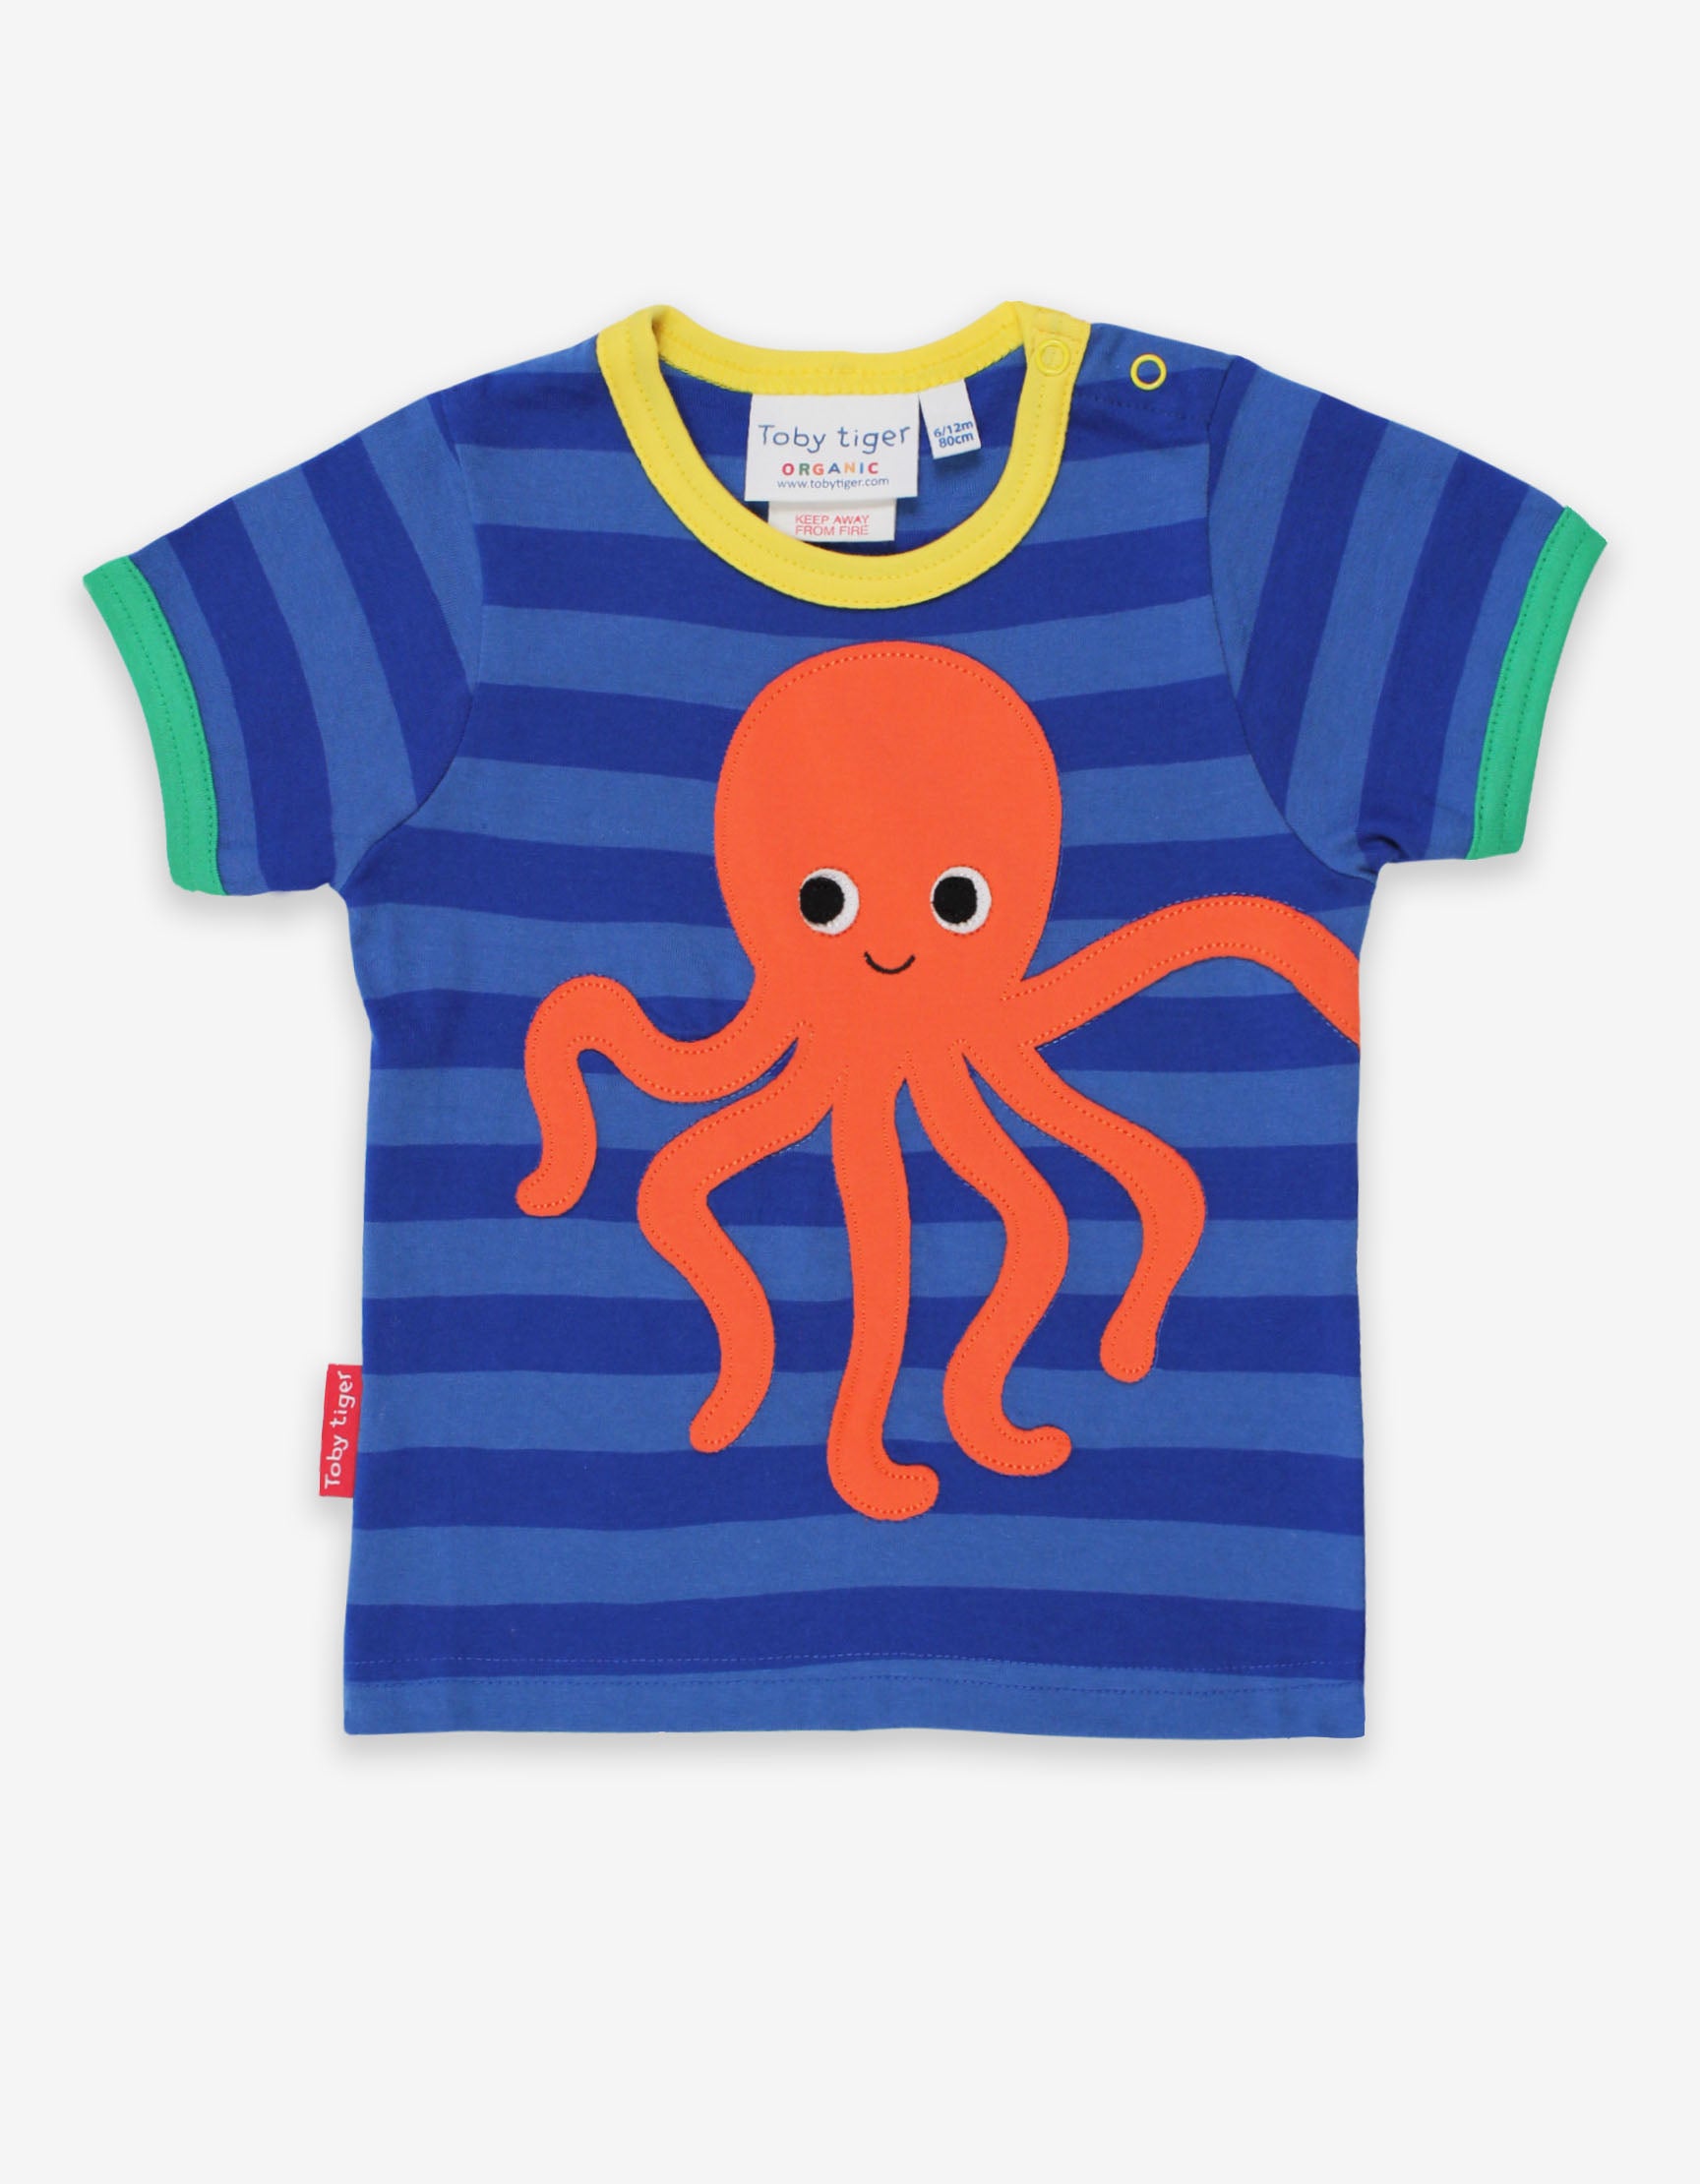 Toby Tiger Organic Short Sleeve T-Shirt - Octopus Applique